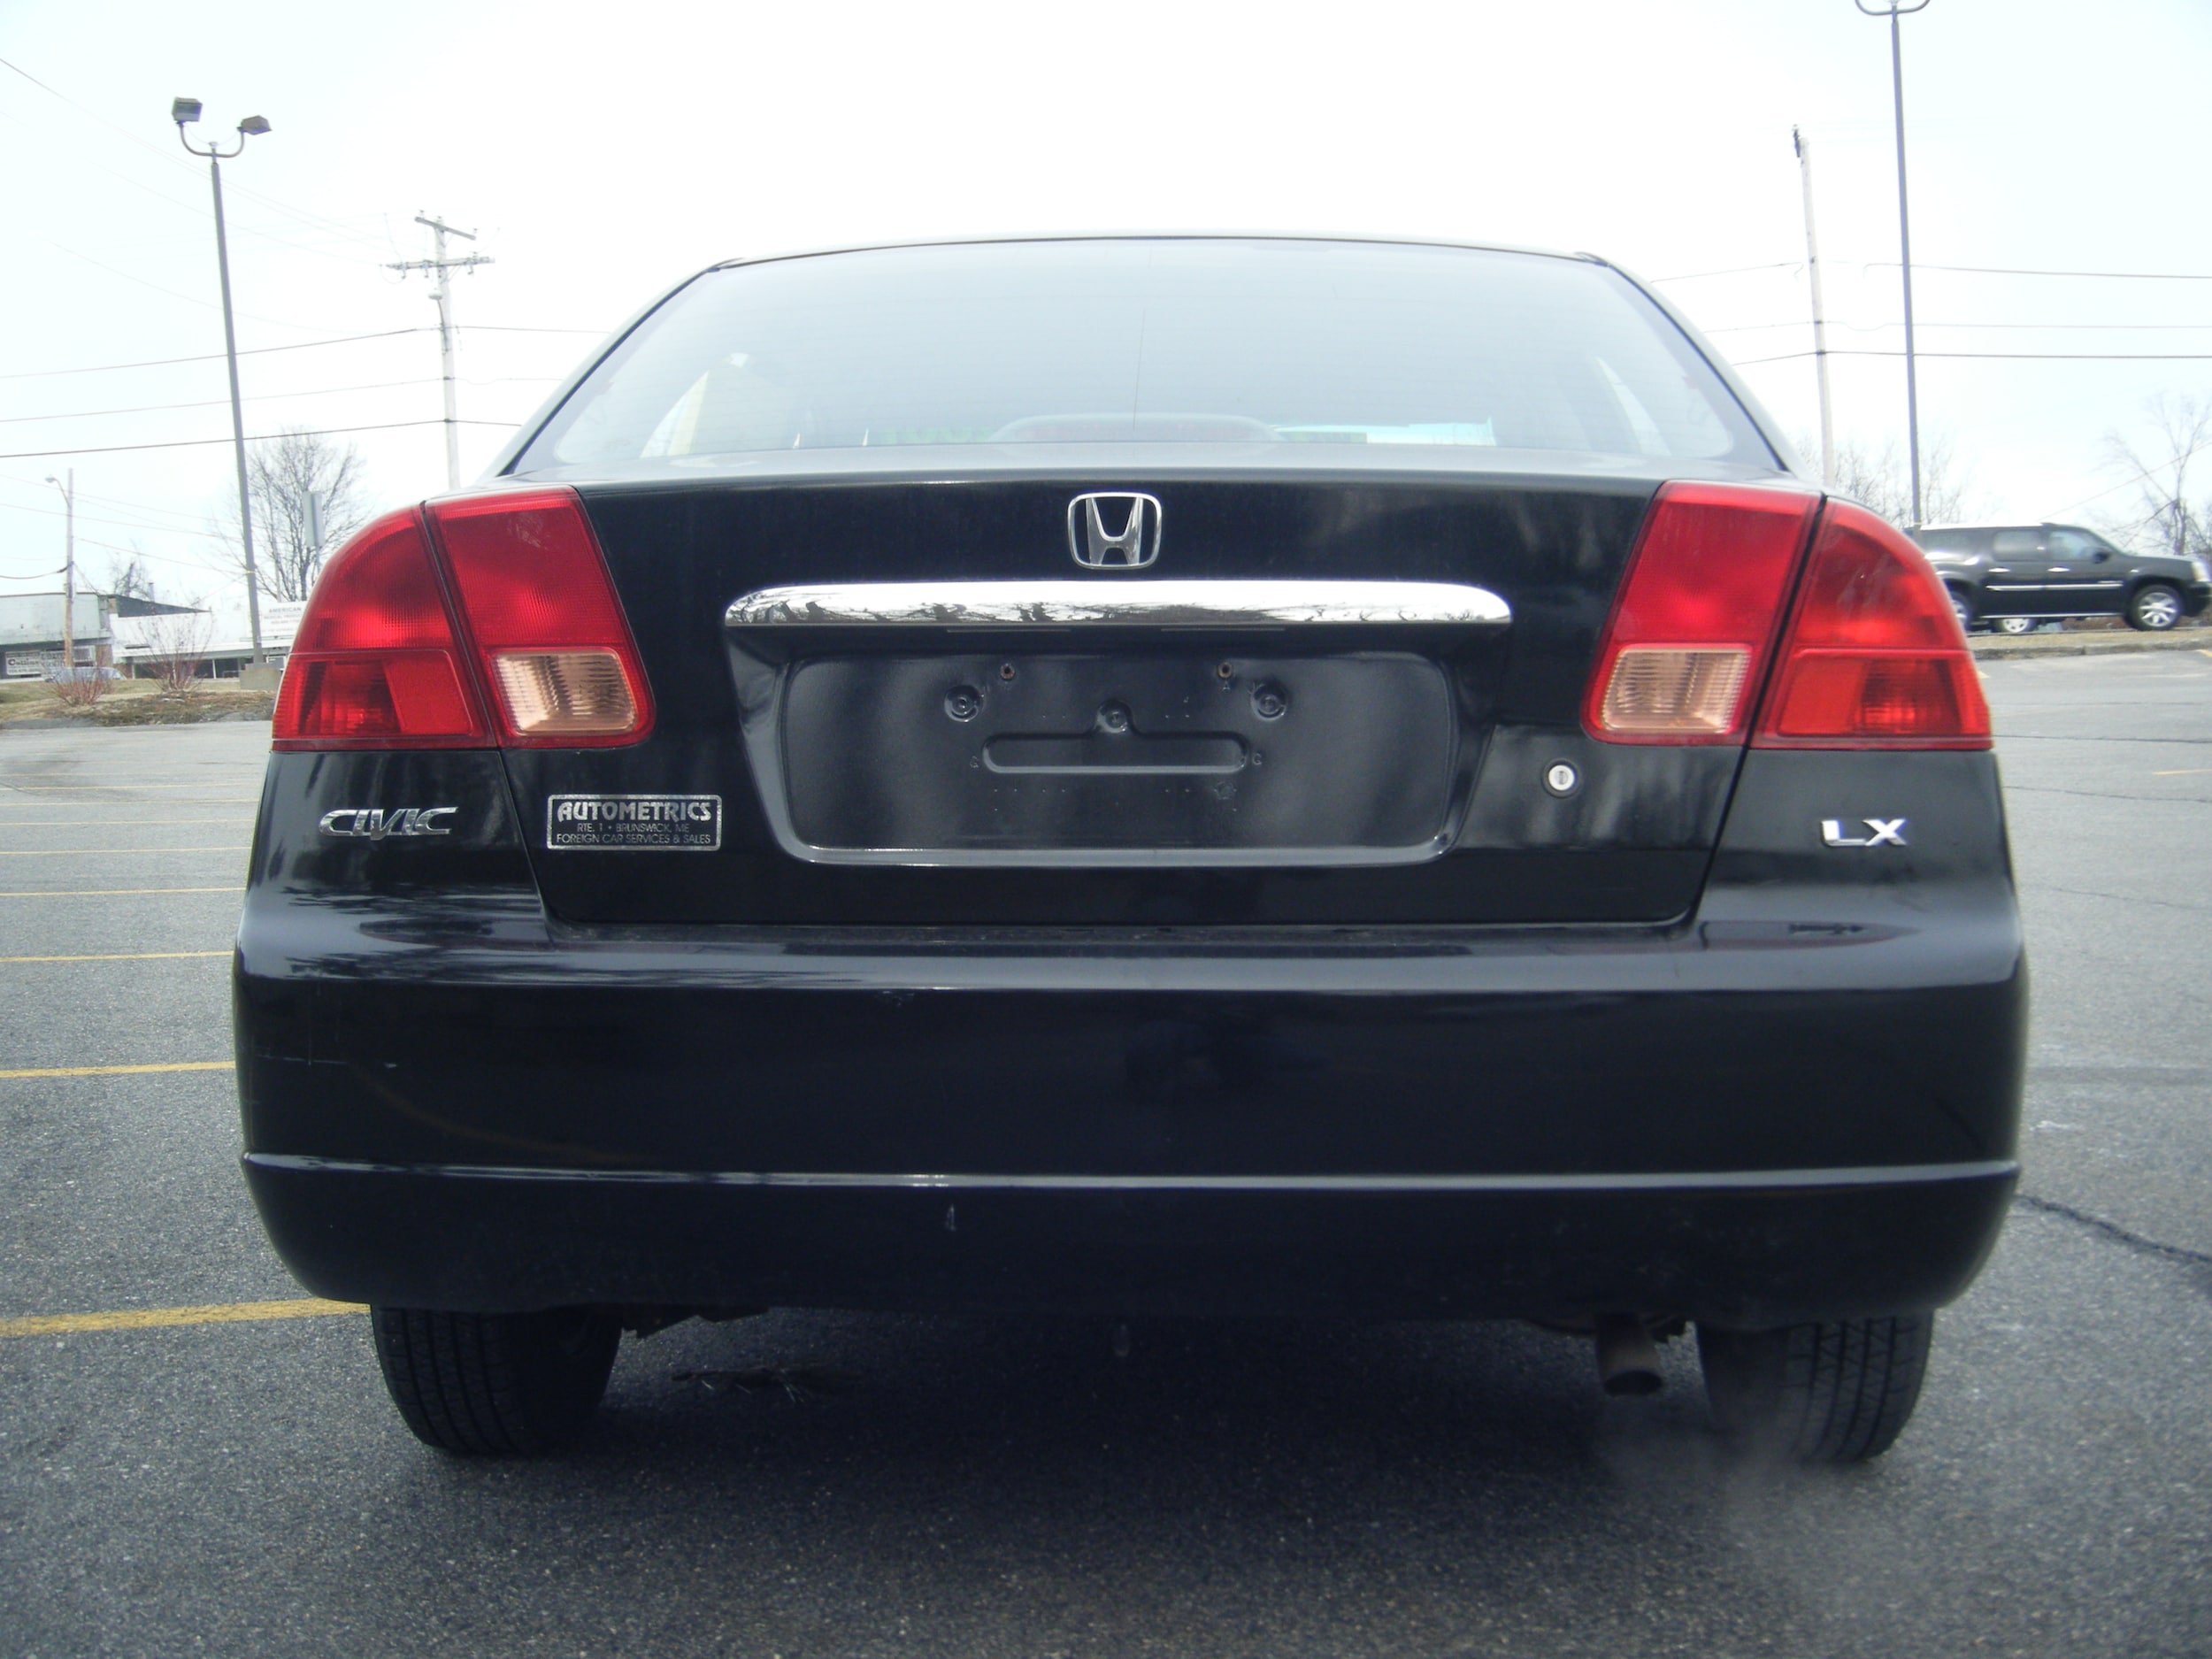 2001 Honda civic for sale in massachusetts #5